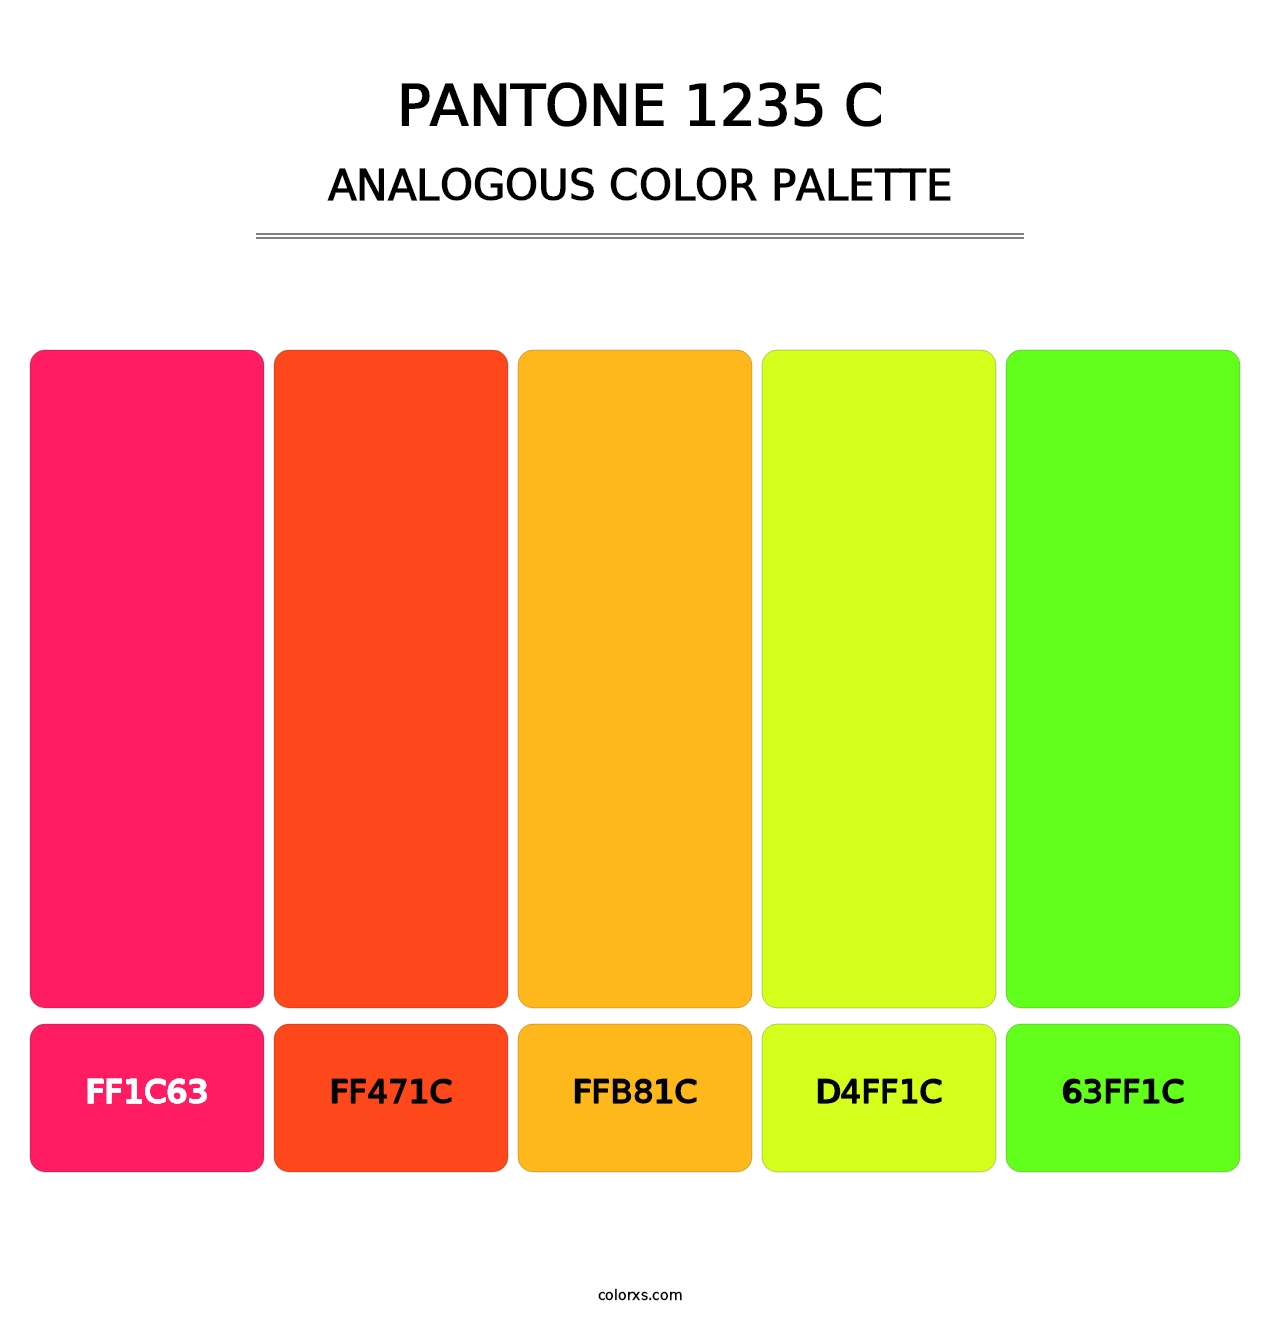 PANTONE 1235 C - Analogous Color Palette